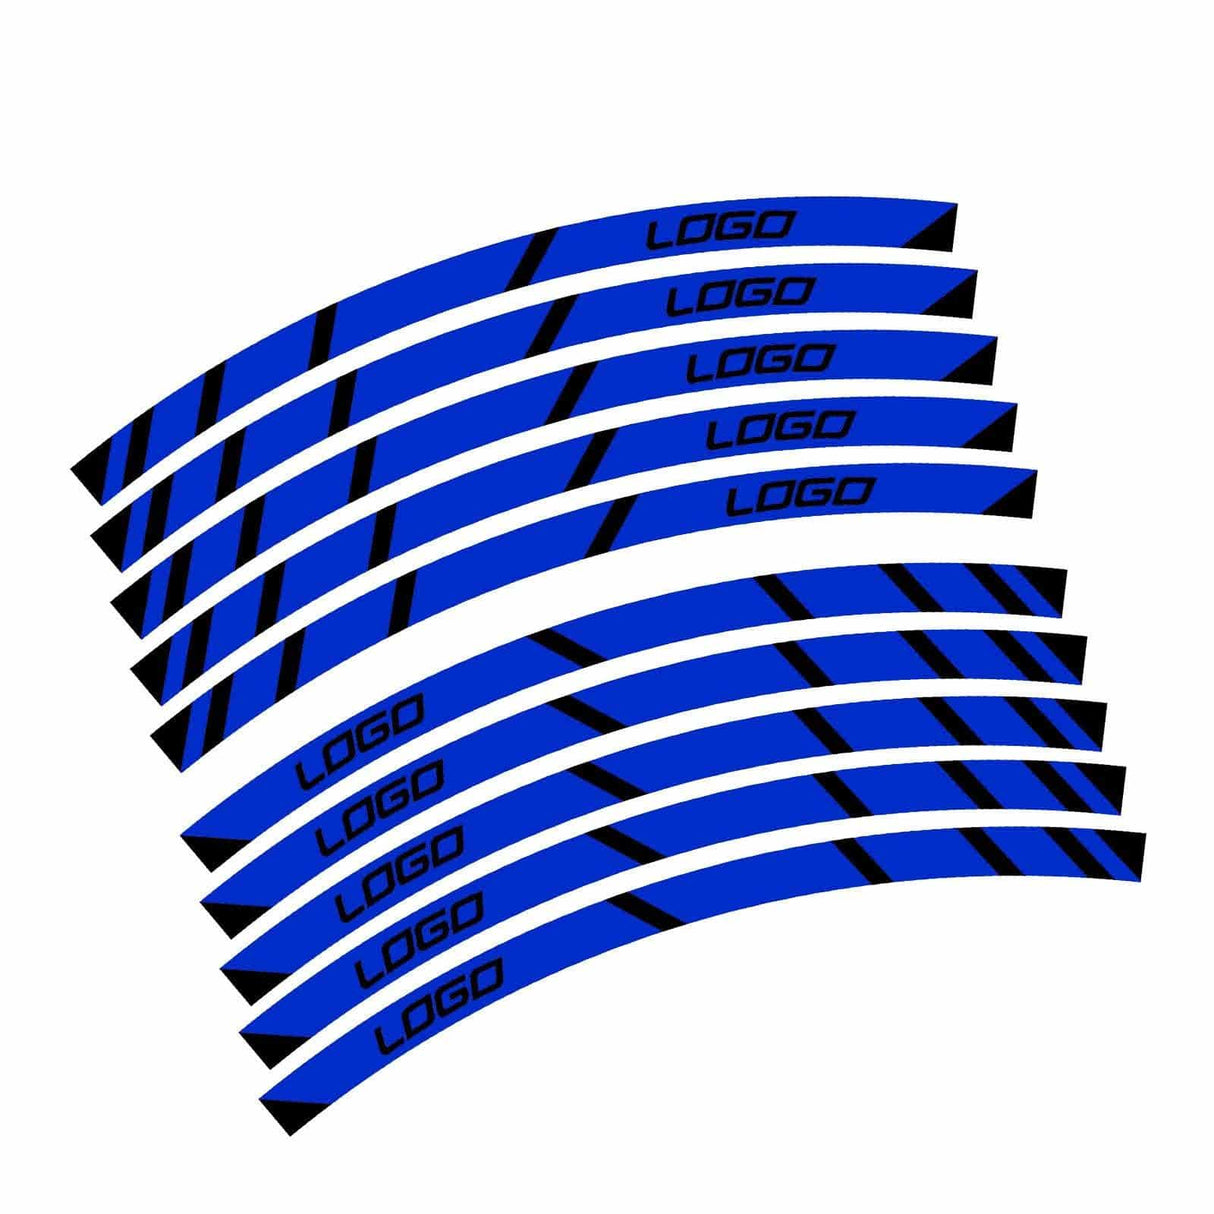 For Aprilia Tuono Logo 17 inch Rim Wheel Stickers MM01B Rim Edge Tapes.